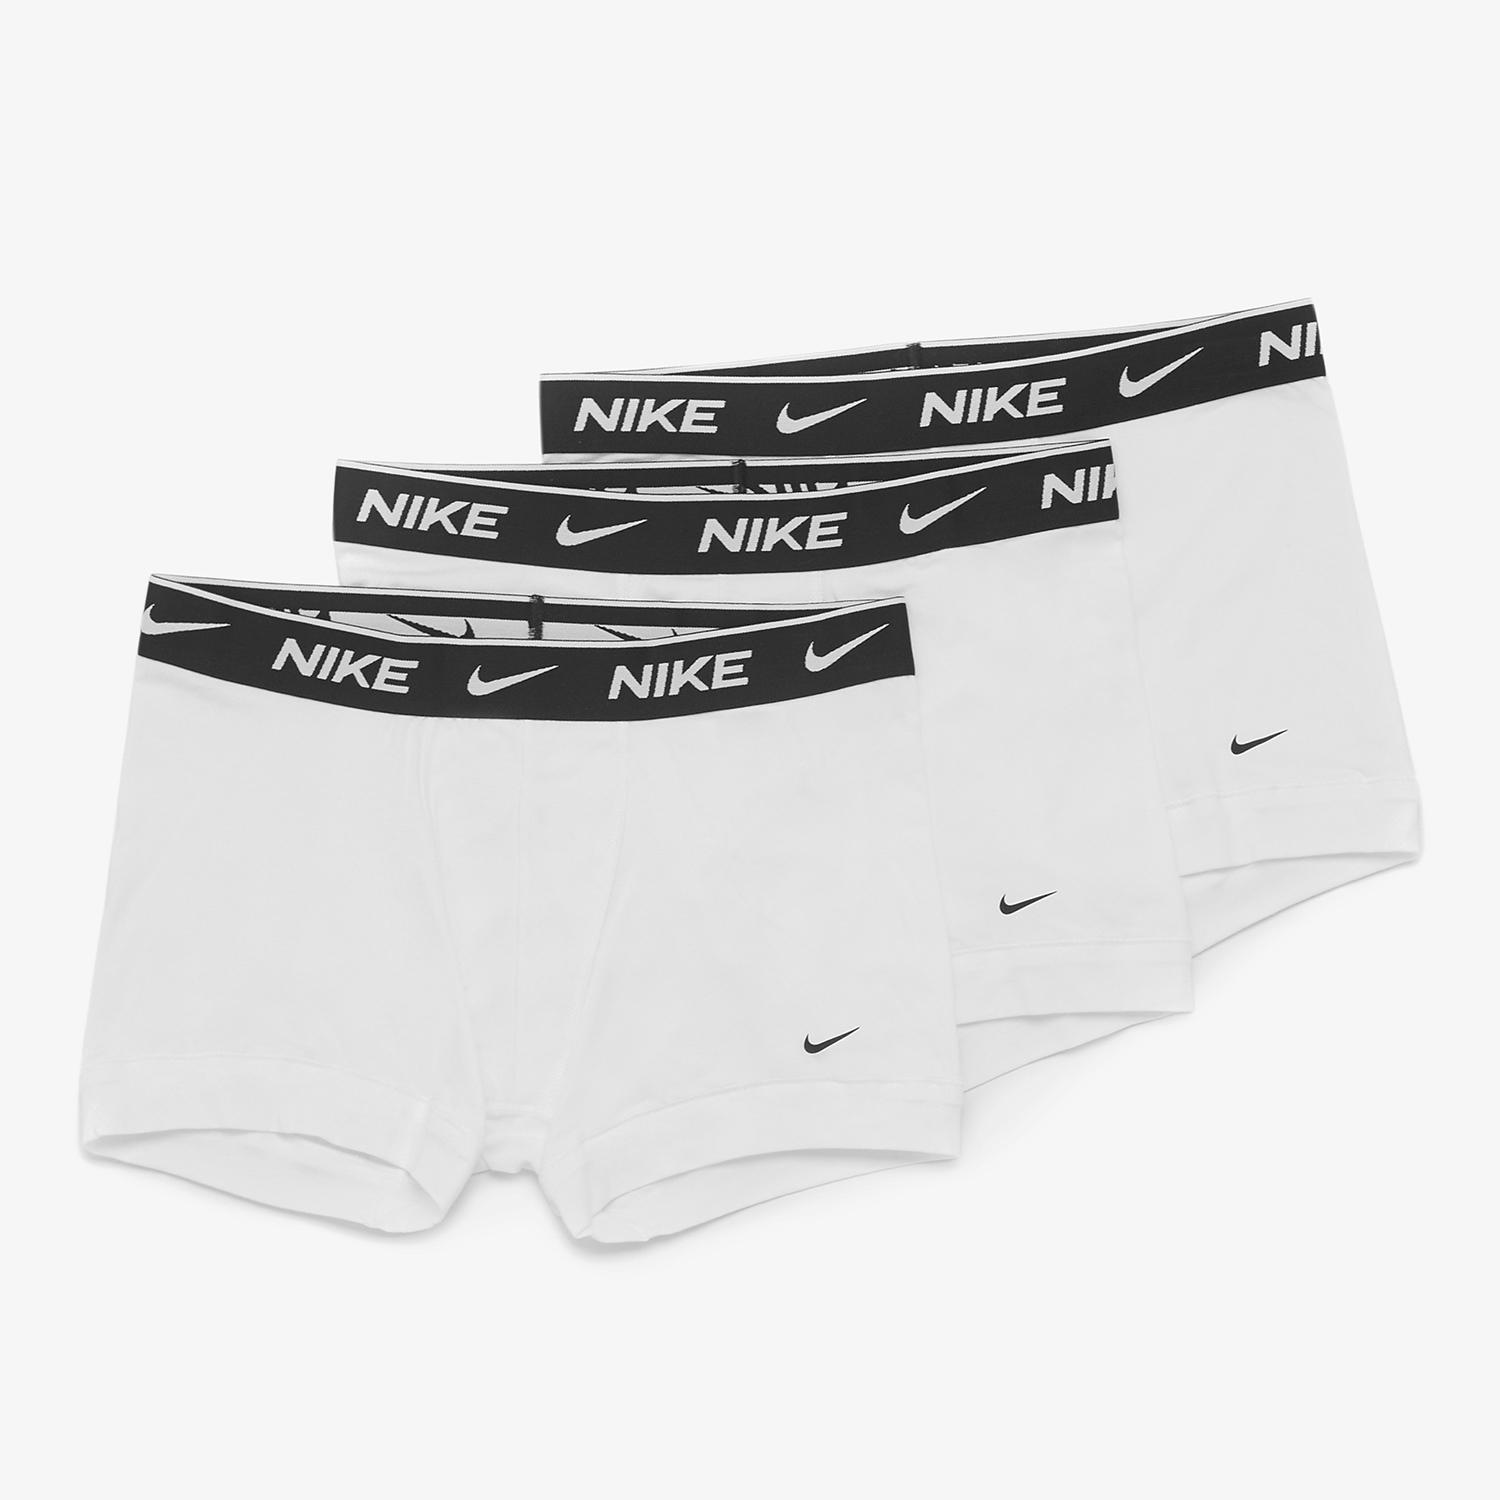 Nike boxers xl